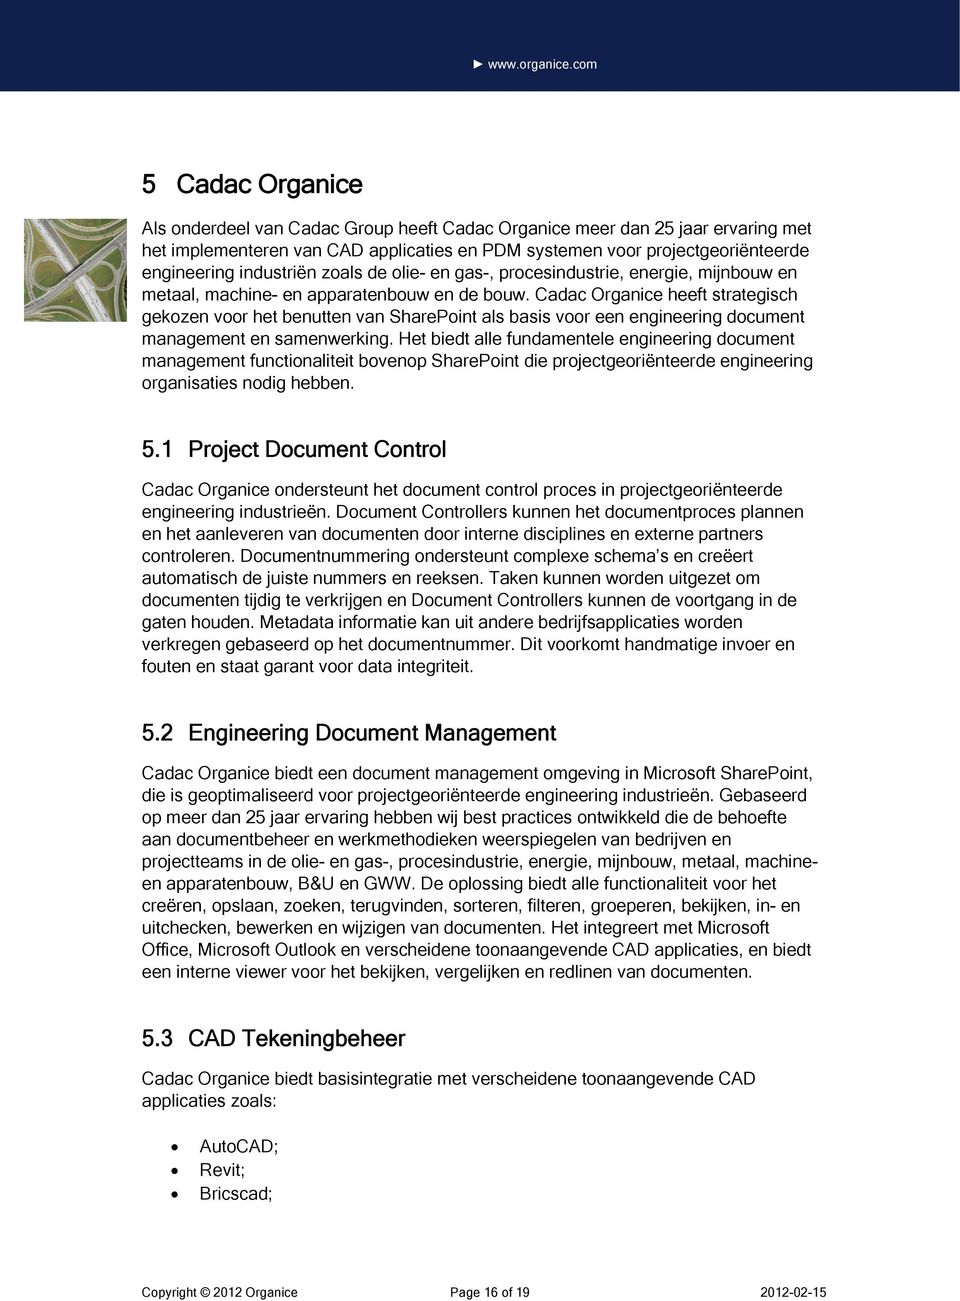 Cadac Organice heeft strategisch gekozen voor het benutten van SharePoint als basis voor een engineering document management en samenwerking.